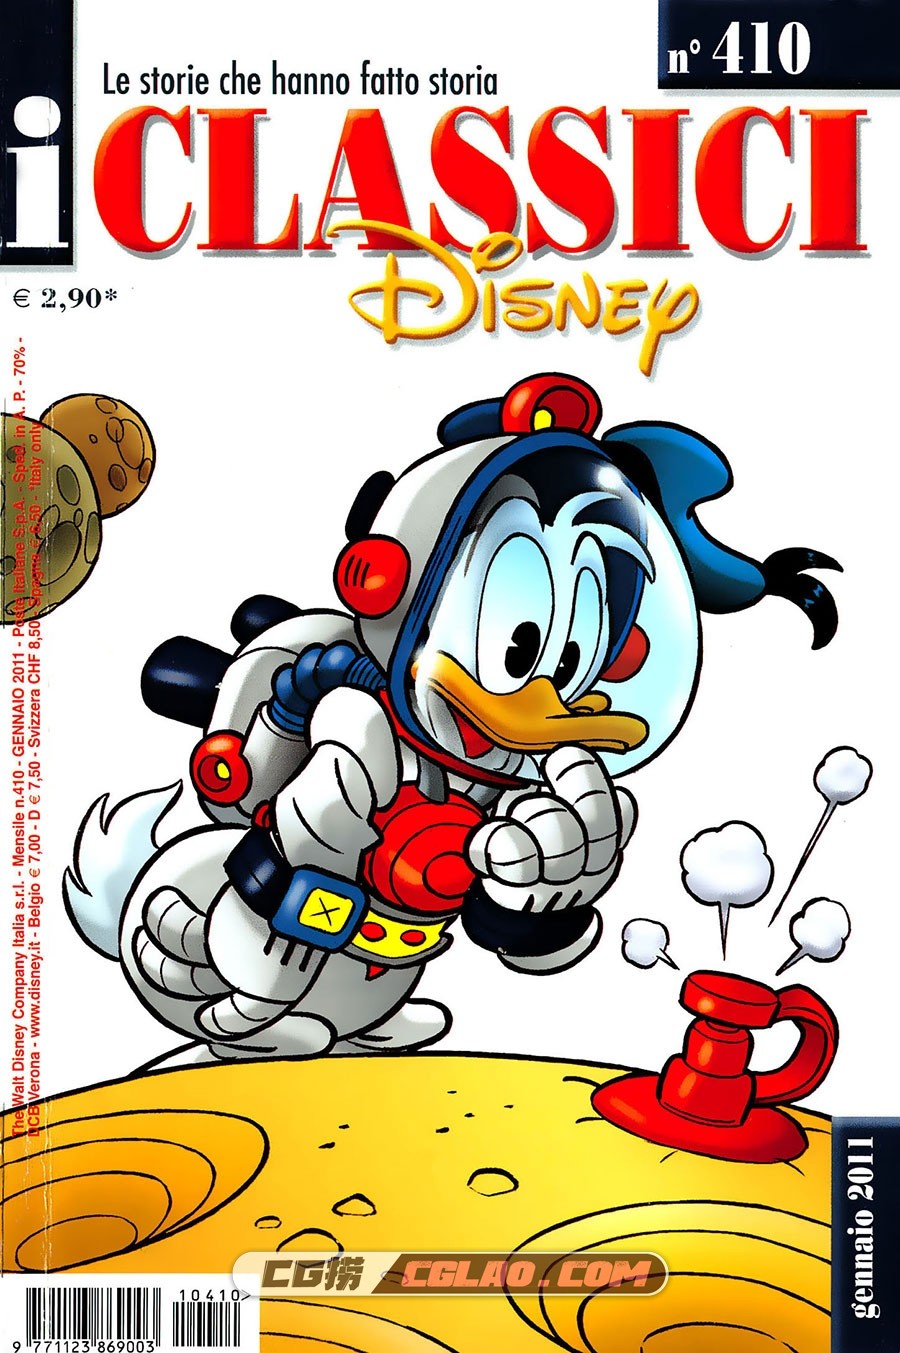 I Classici Disney 410 Serie II Le Storie che hanno fatto storia 漫画,Classici-Disney-410-Bibbo64_001.jpg